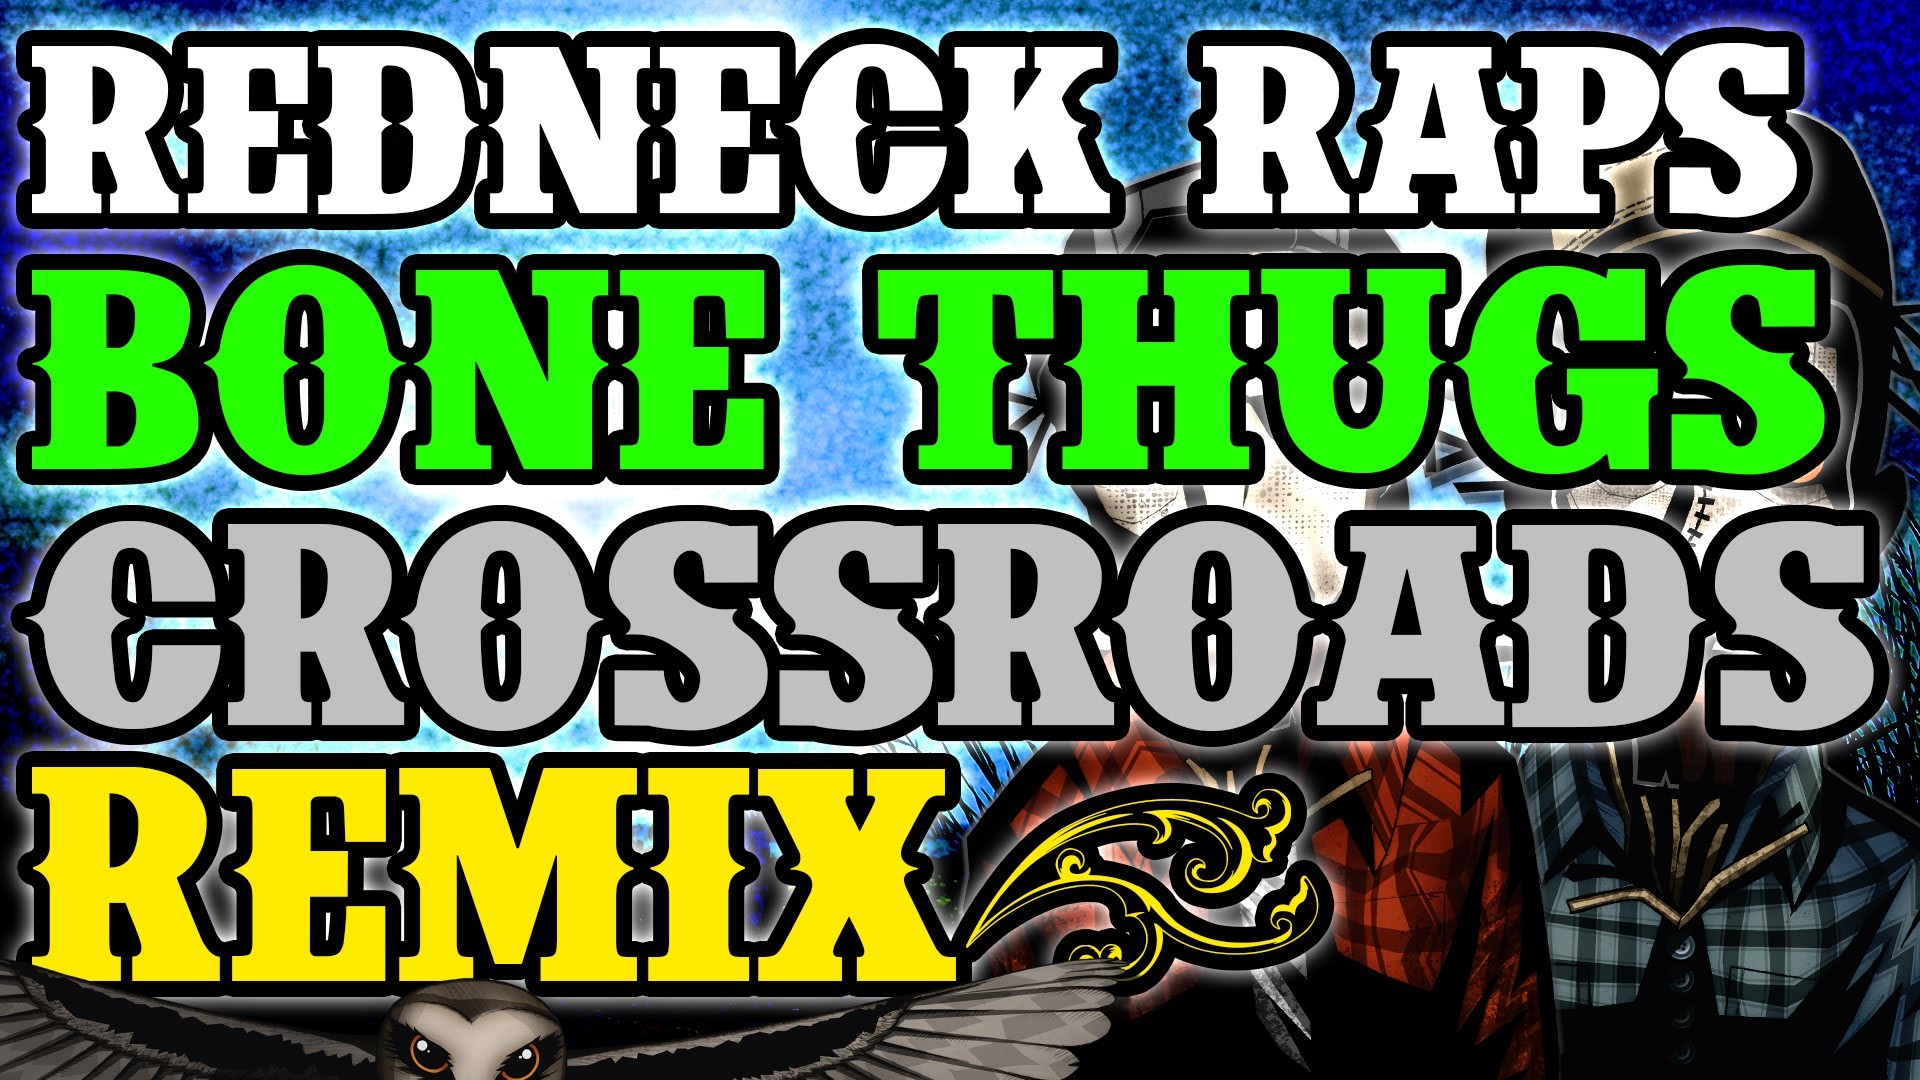 Redneck Souljers – Tha Tobacco Bone Thugz N Harmony – Tha Crossroads remix